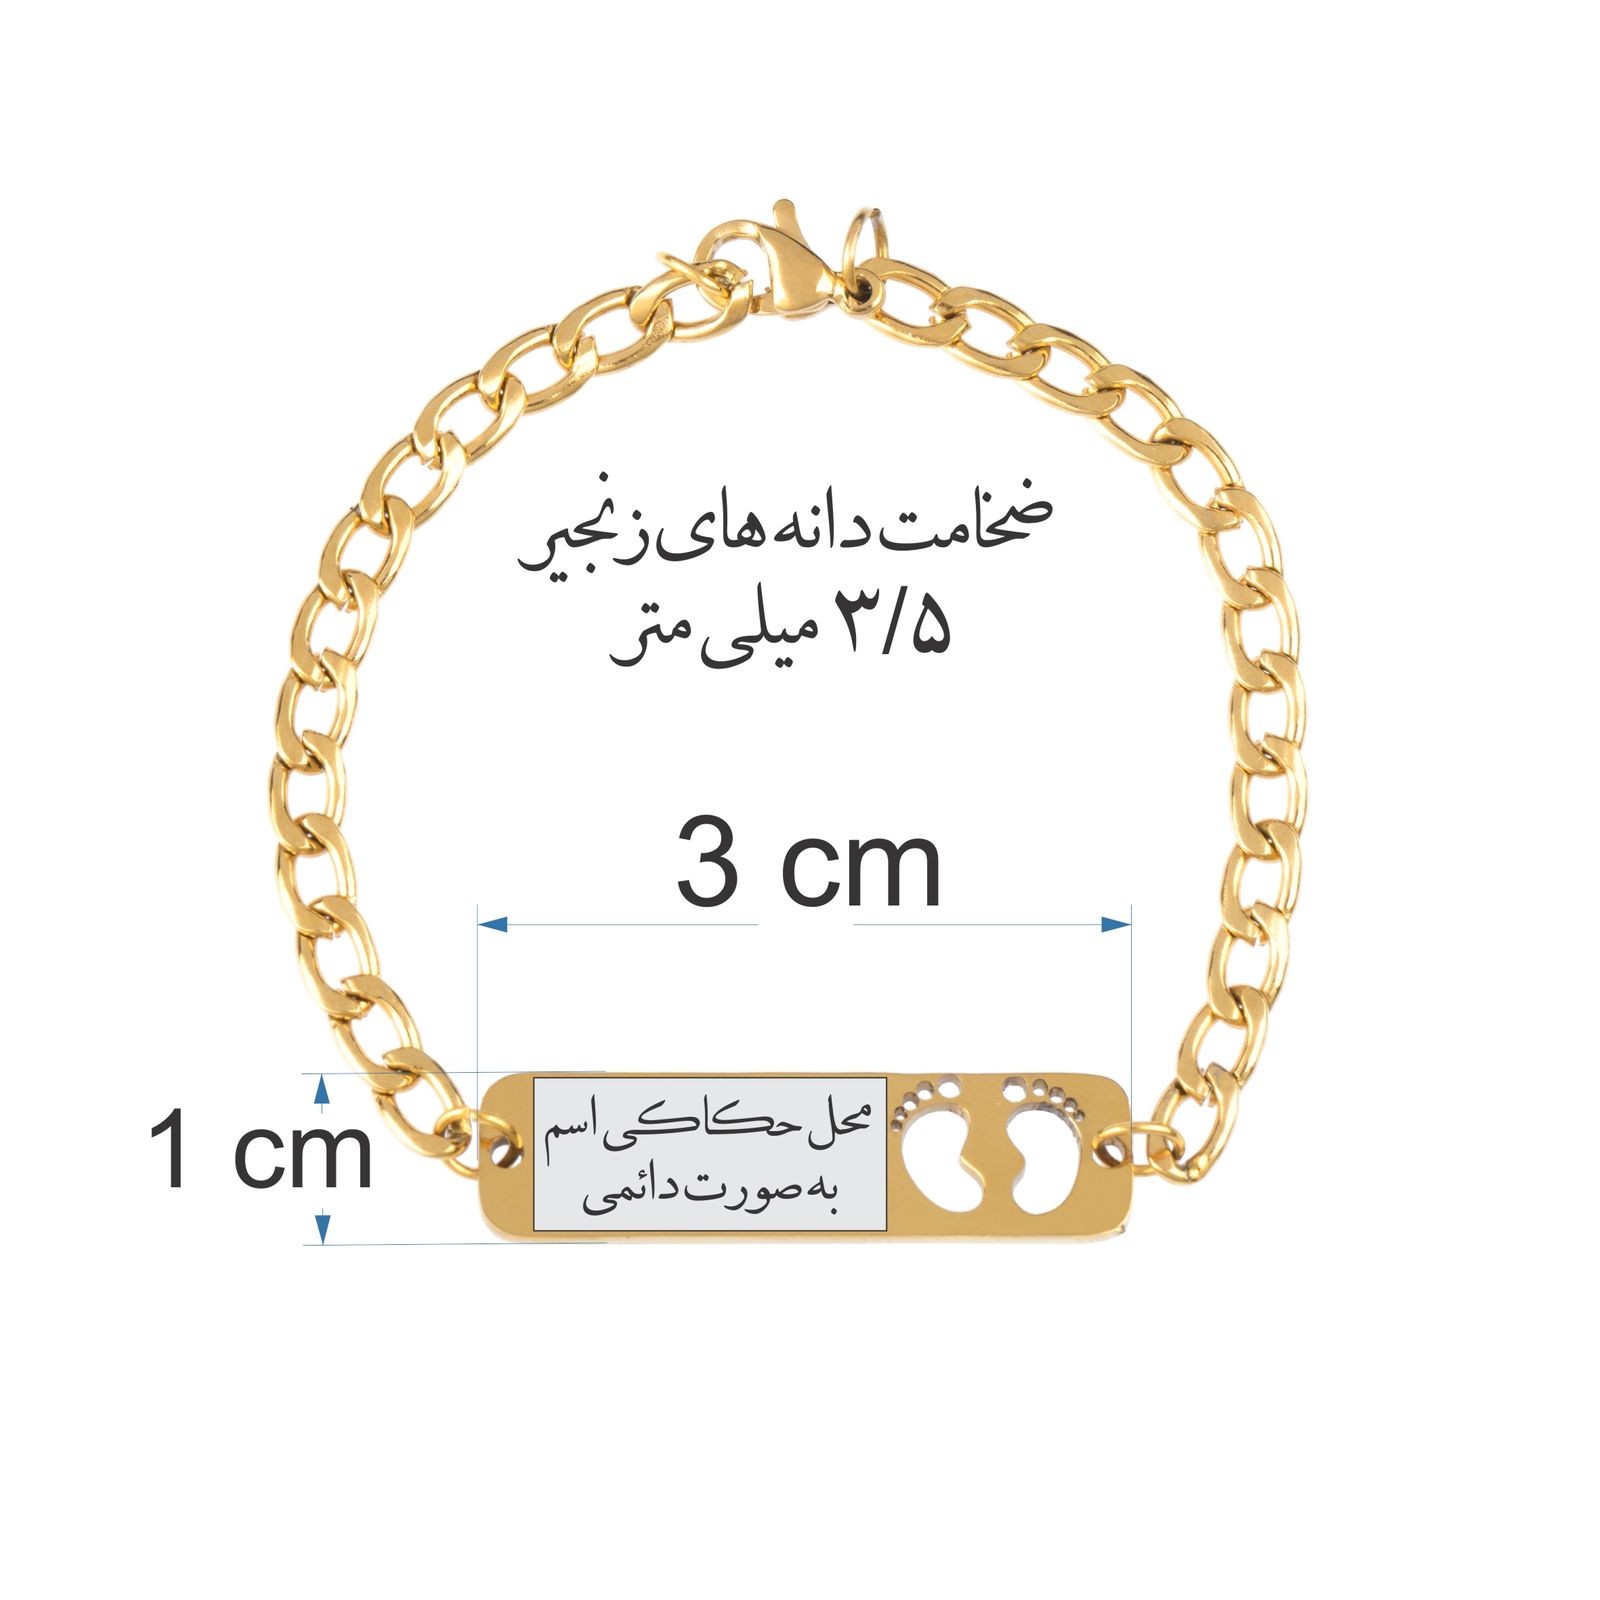 دستبند دخترانه گيلواره زراوشان مدل اسم النا کد B116 -  - 2